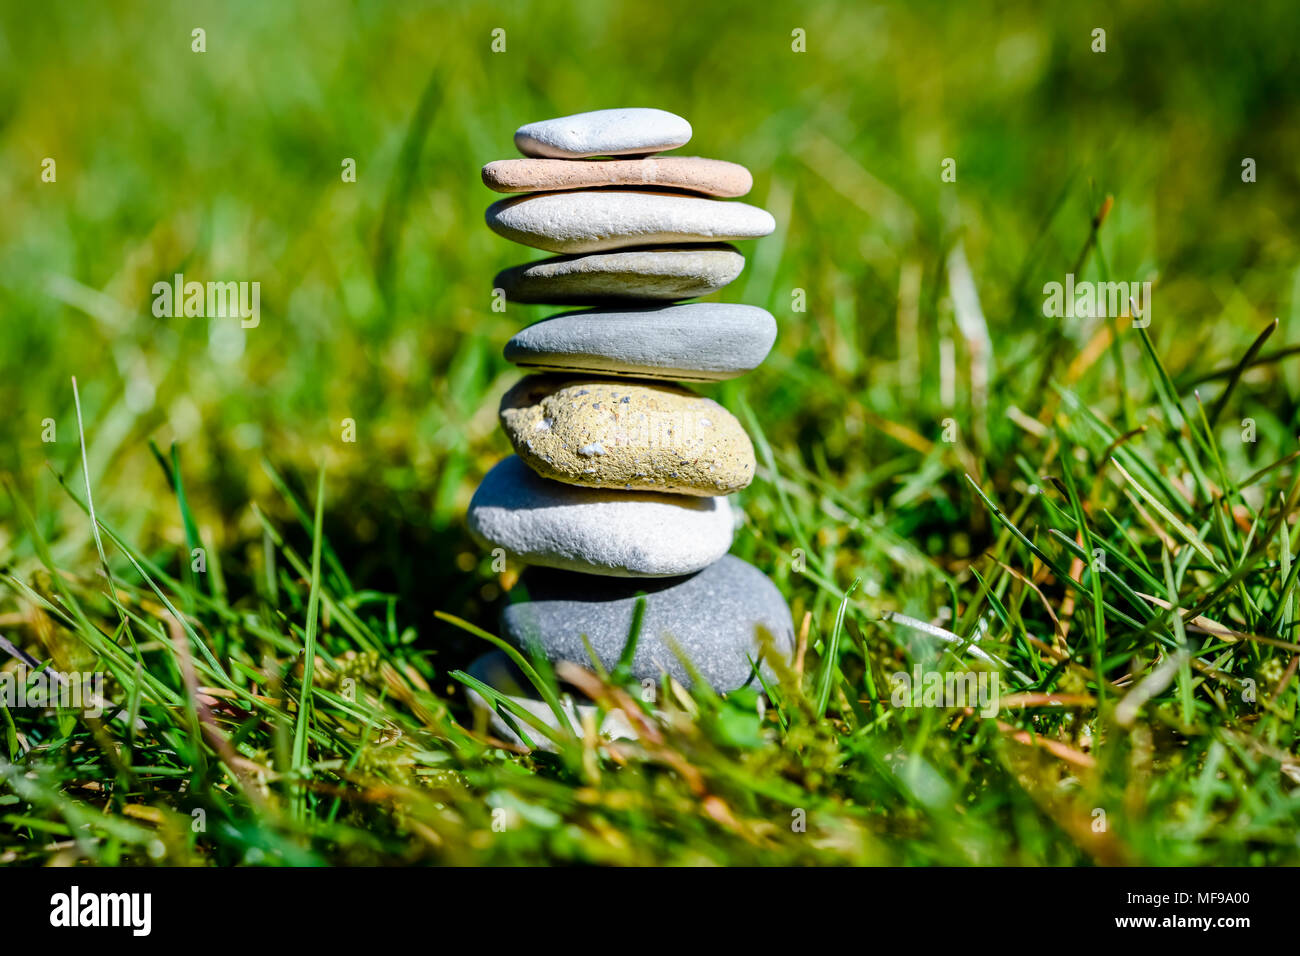 Stacked stones, harmony, balance Stock Photo